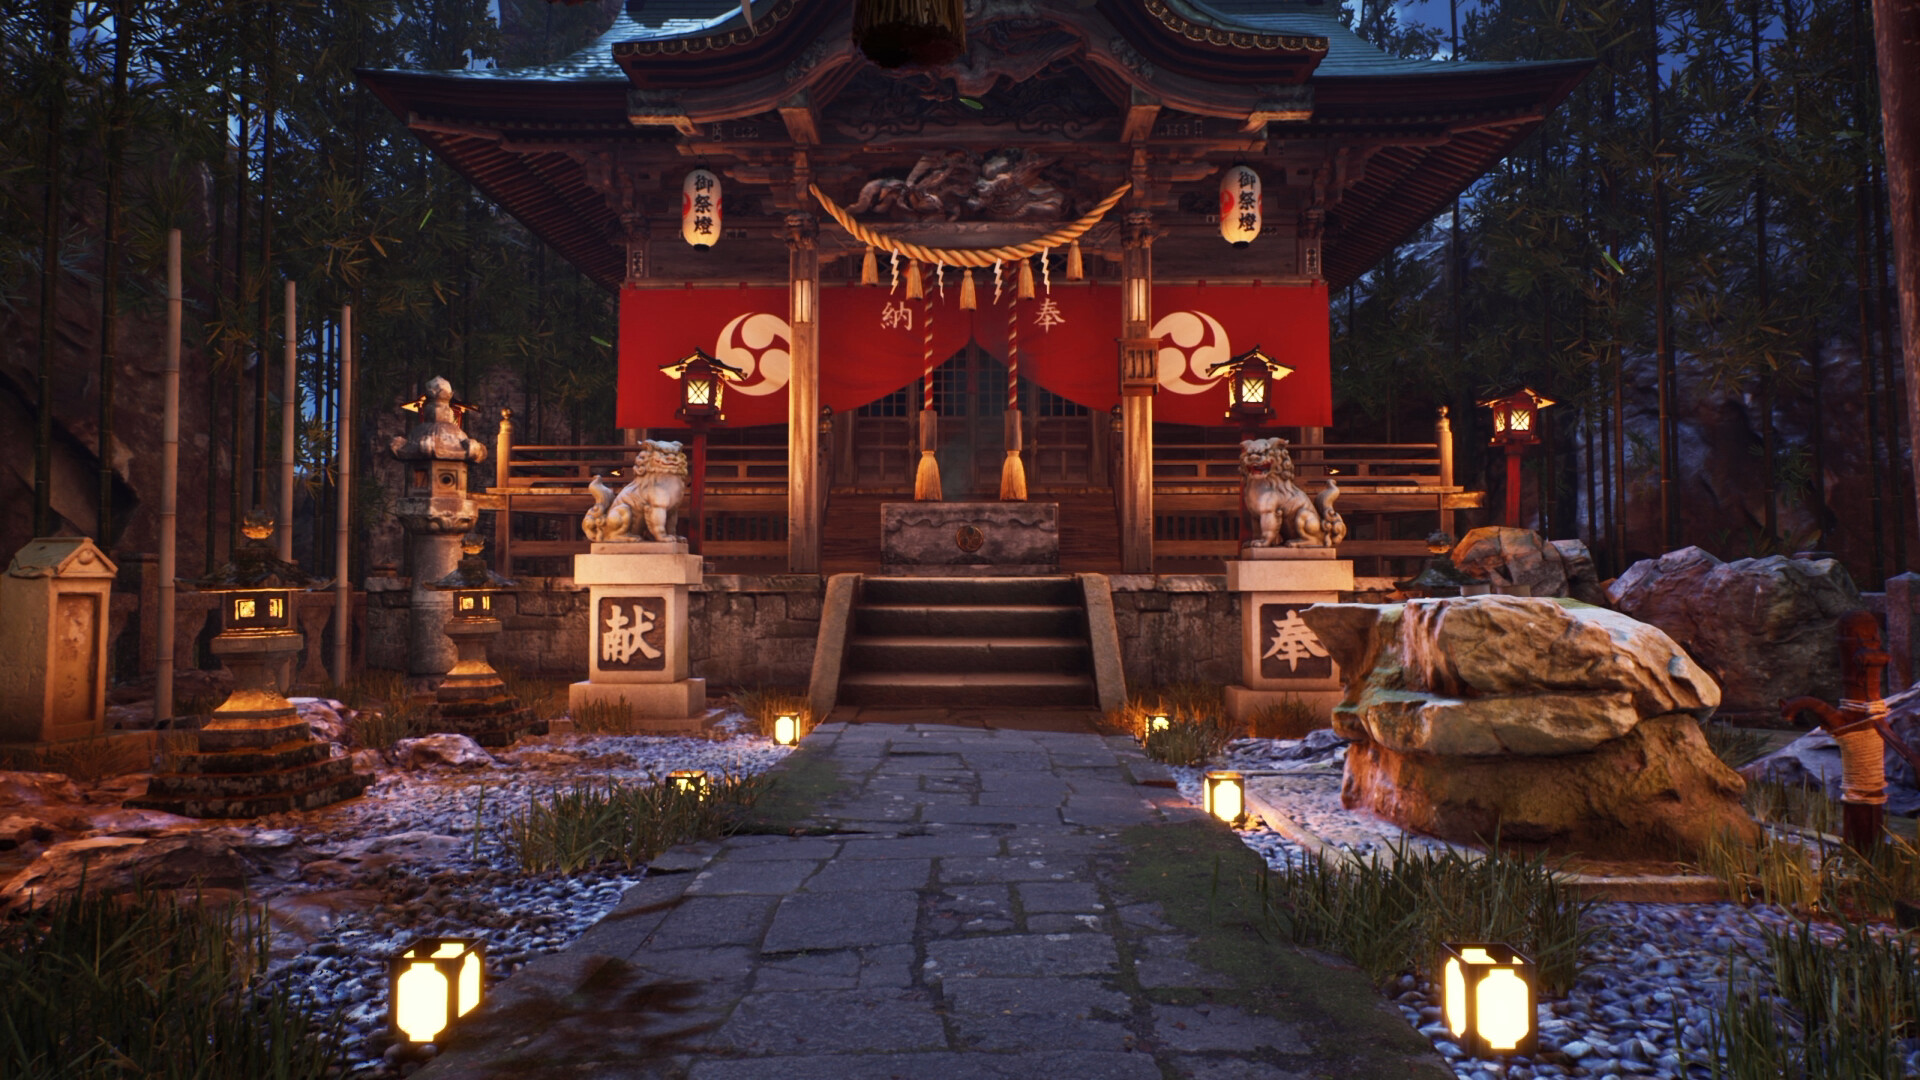 L Li 神社